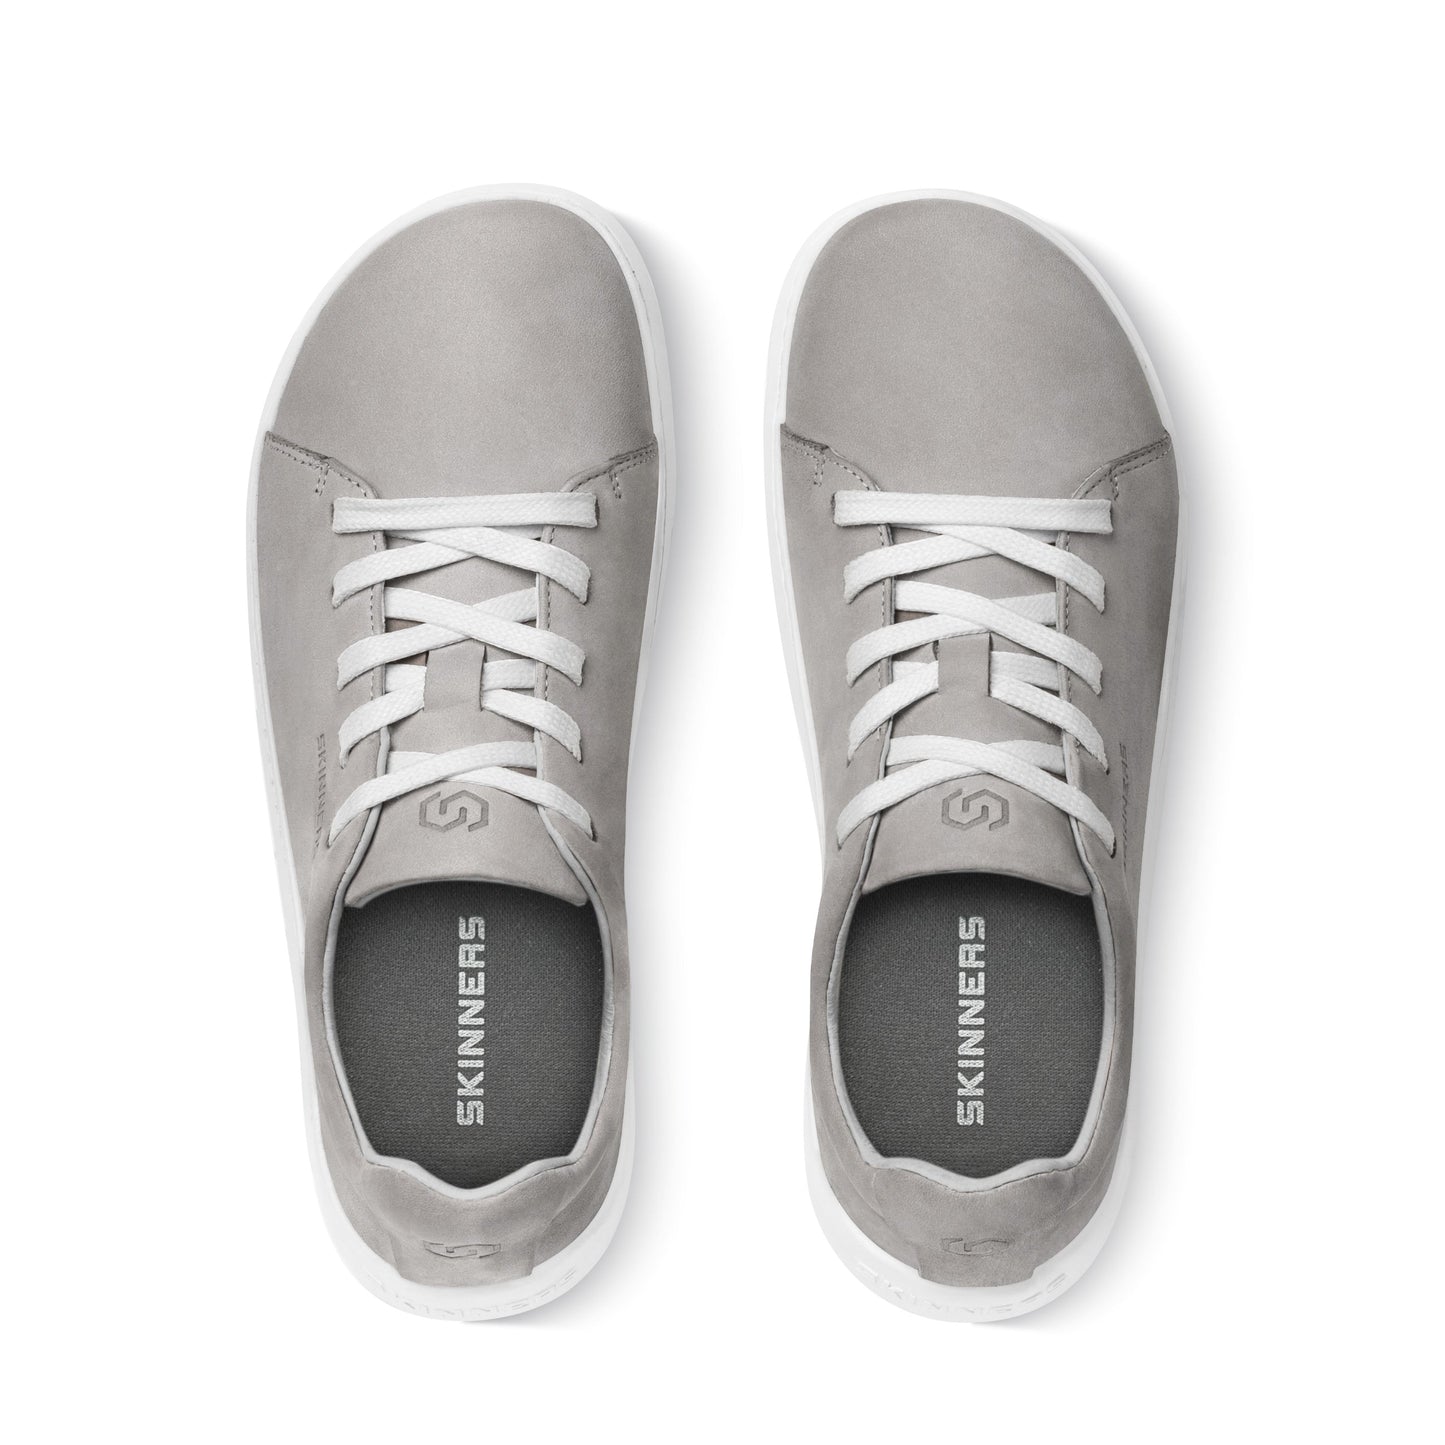 Mærkbare Walker barfods sneakers til kvinder og mænd i farven grey / white, top